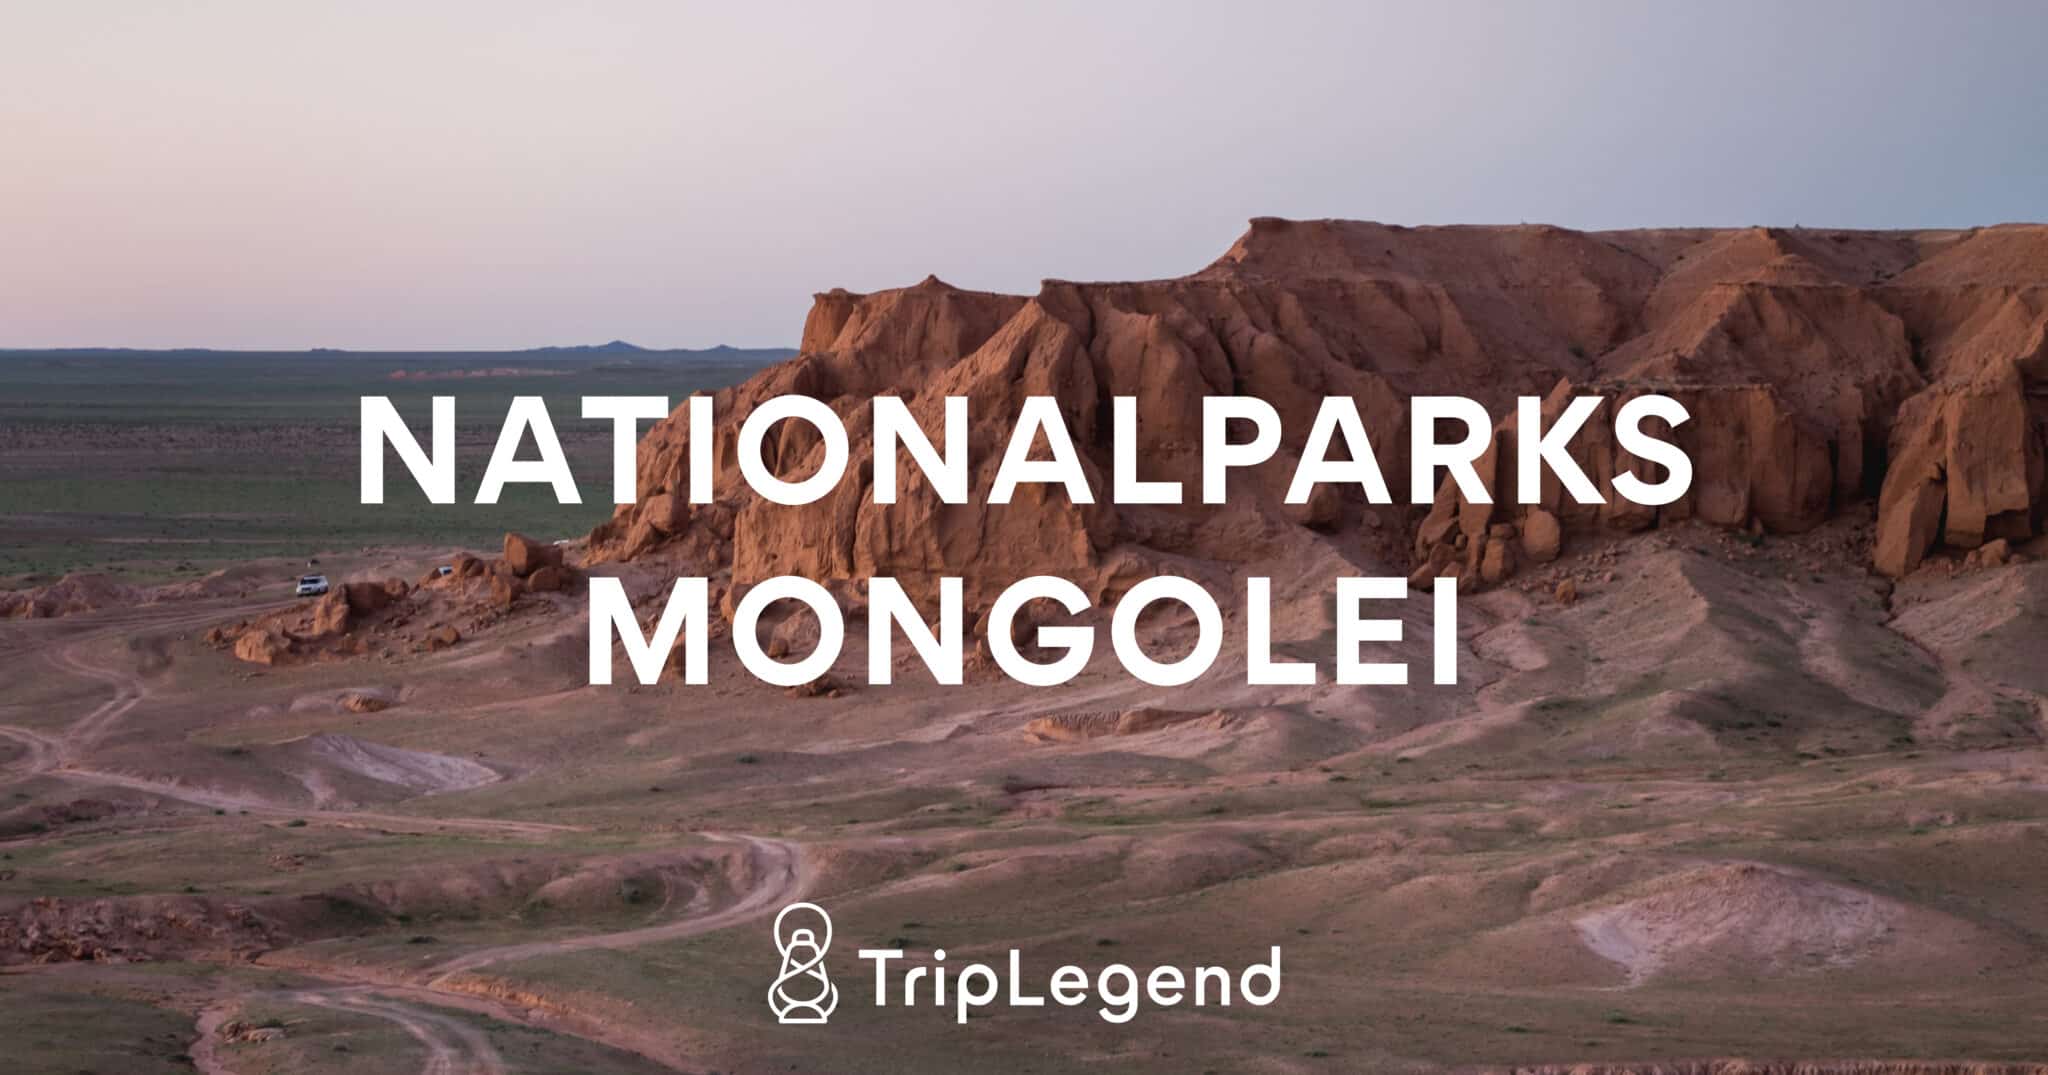 Mongolian kansallispuistoja käsittelevän artikkelin pääkuva.